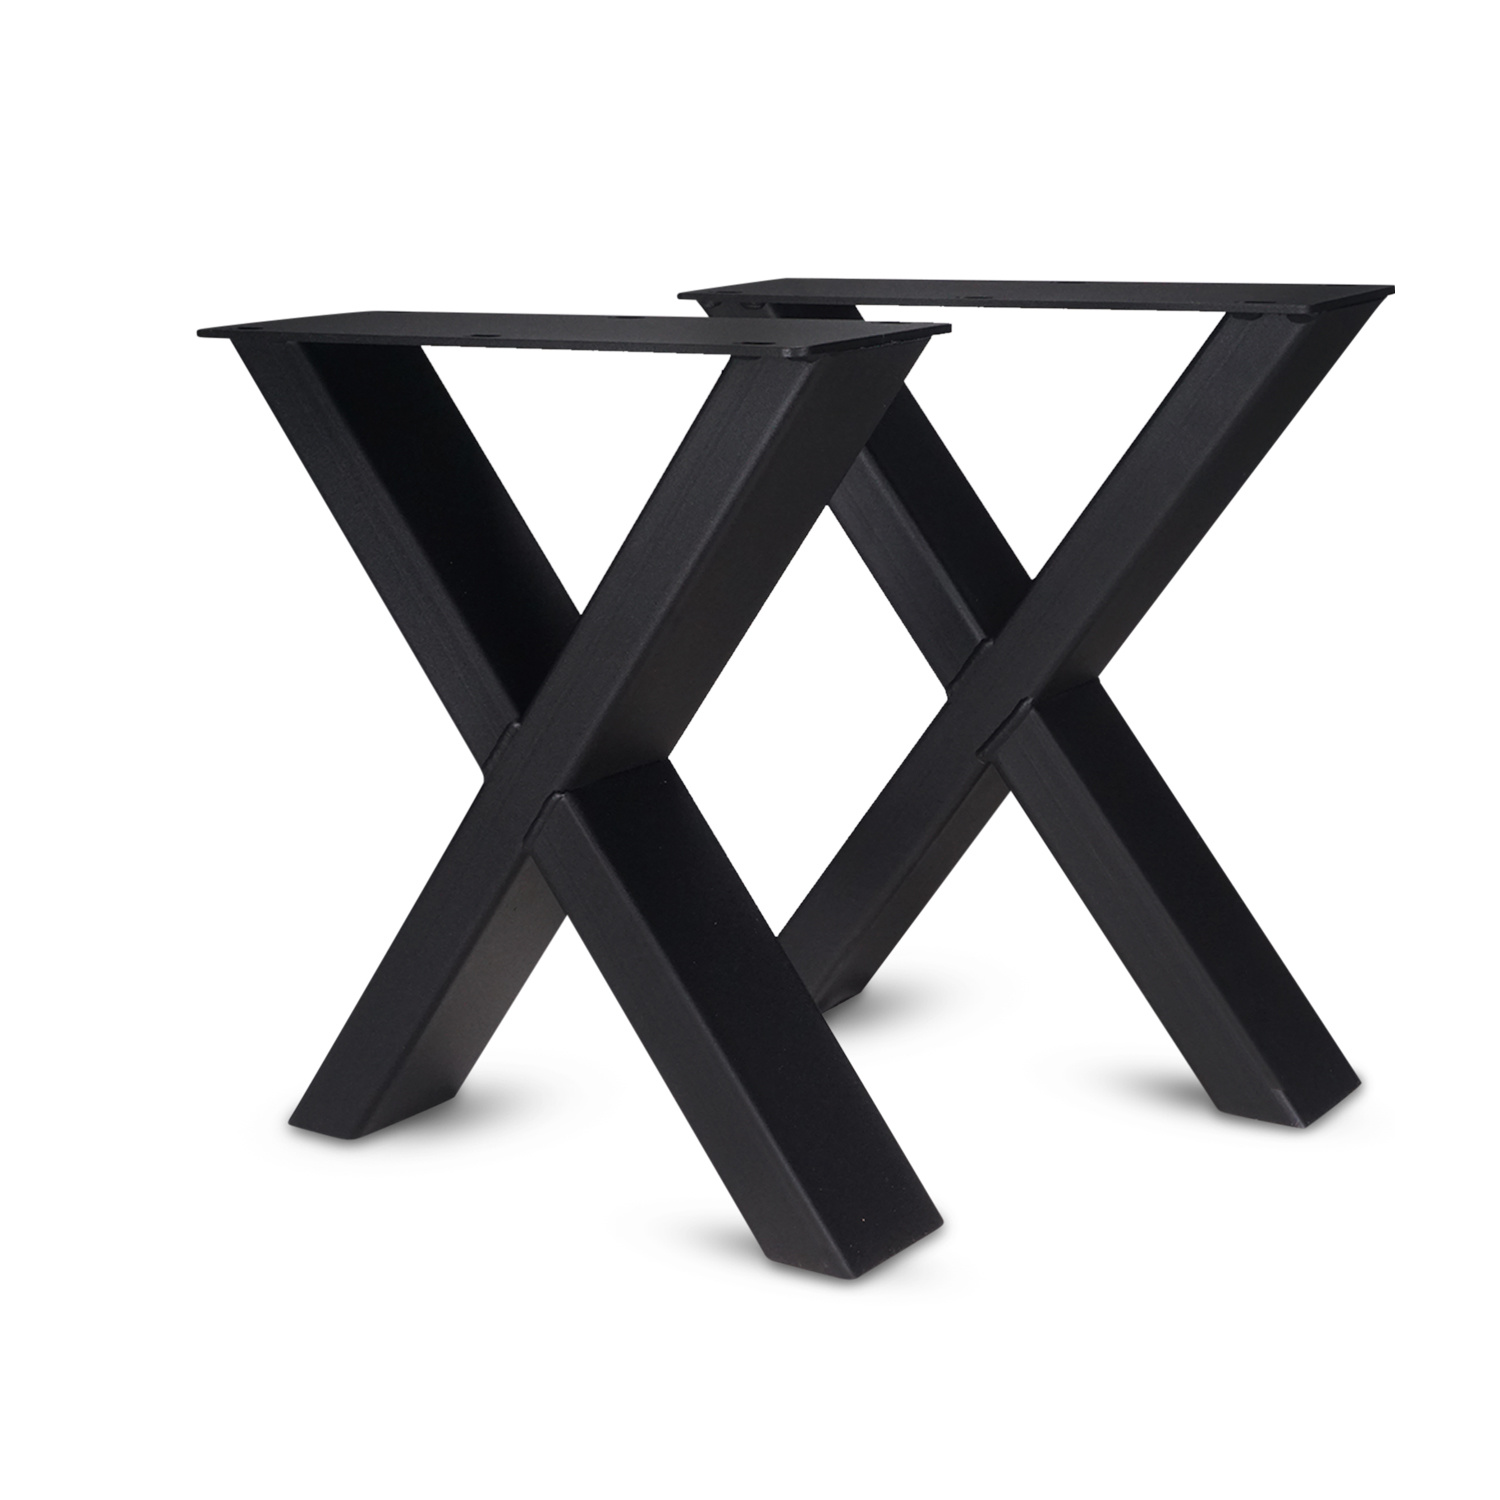  Couchtisch Beine X Metall elegant SET (2 Stück) - 10x4 cm - 56 cm breit - 41 cm hoch - X-form Tischbeinen / Tischkufen Couchtisch - beschichtet - Schwarz